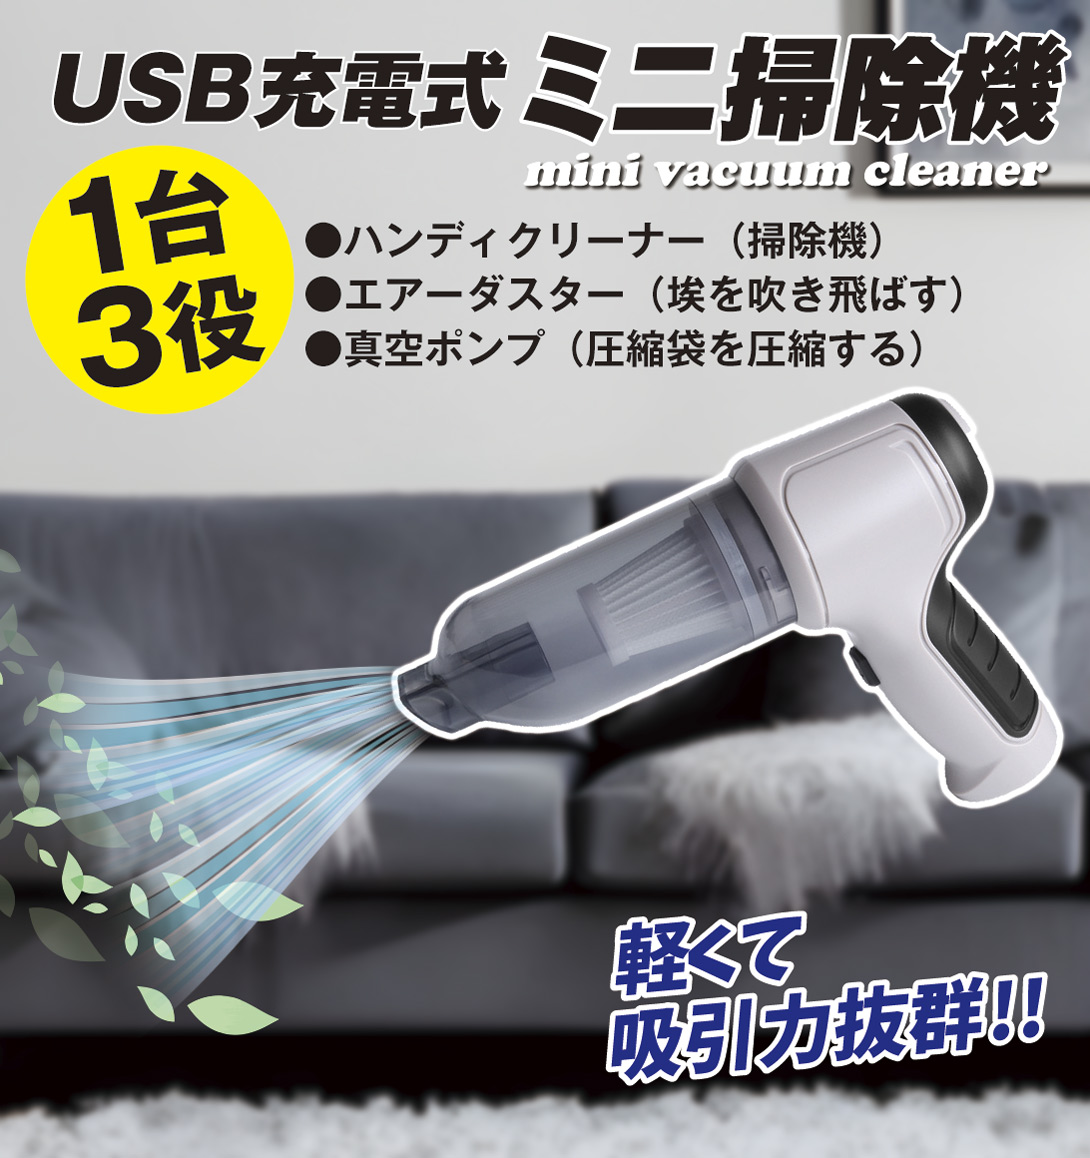 USB充電式ミニ掃除機 ハンドポンプ付き